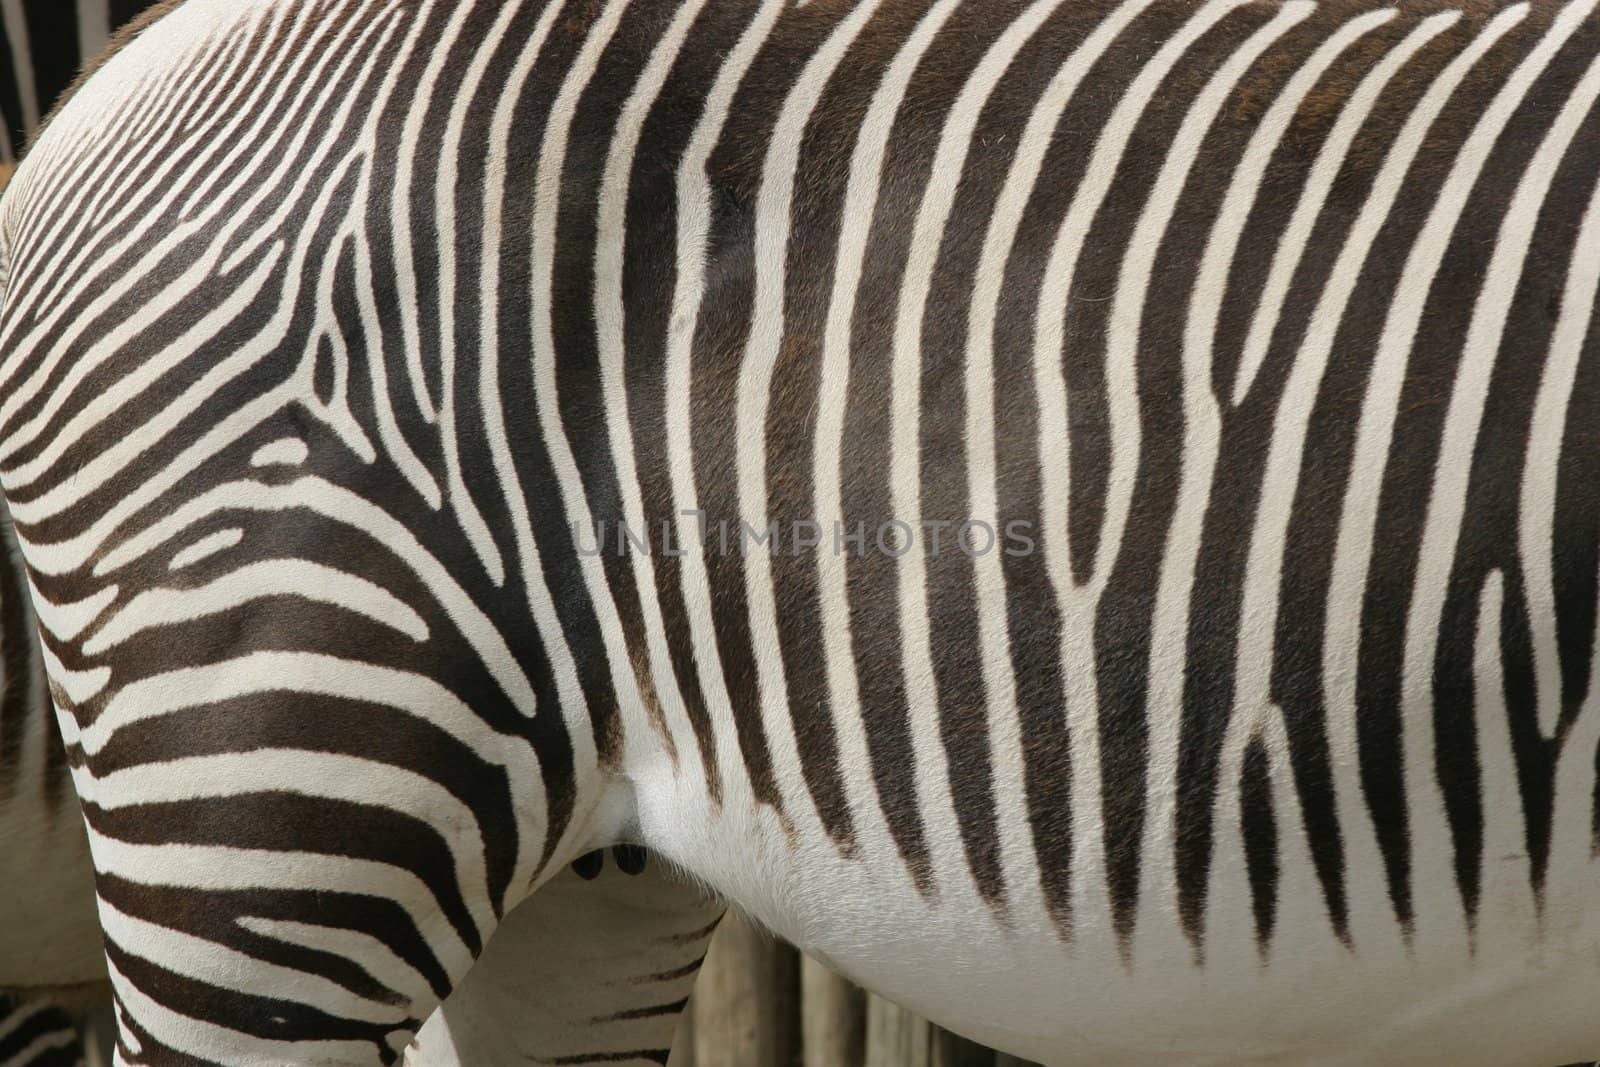 Zebra by yucas